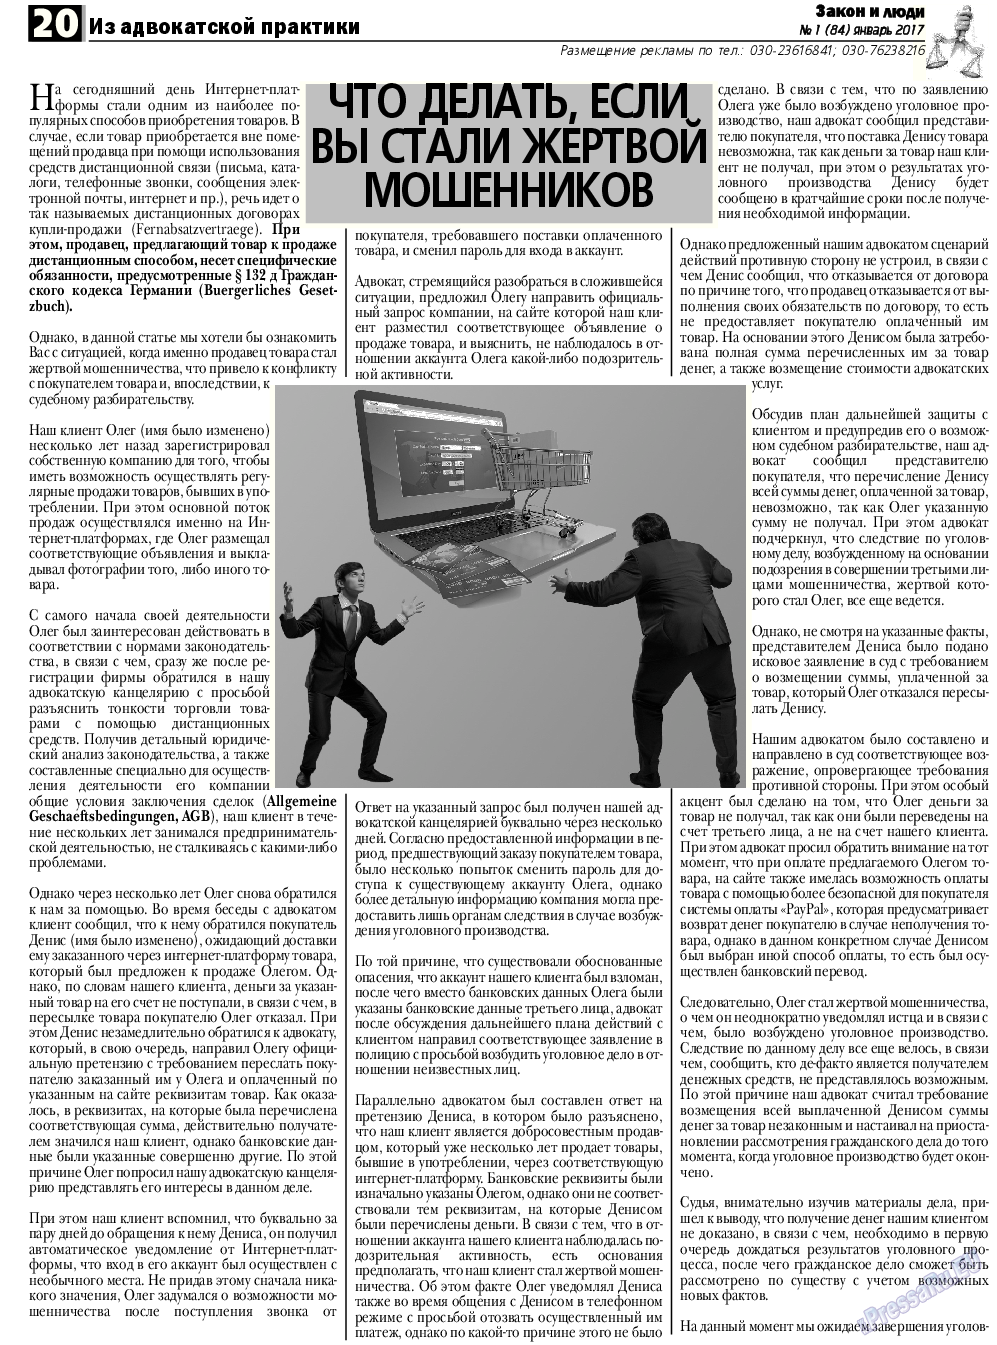 Закон и люди, газета. 2017 №1 стр.20